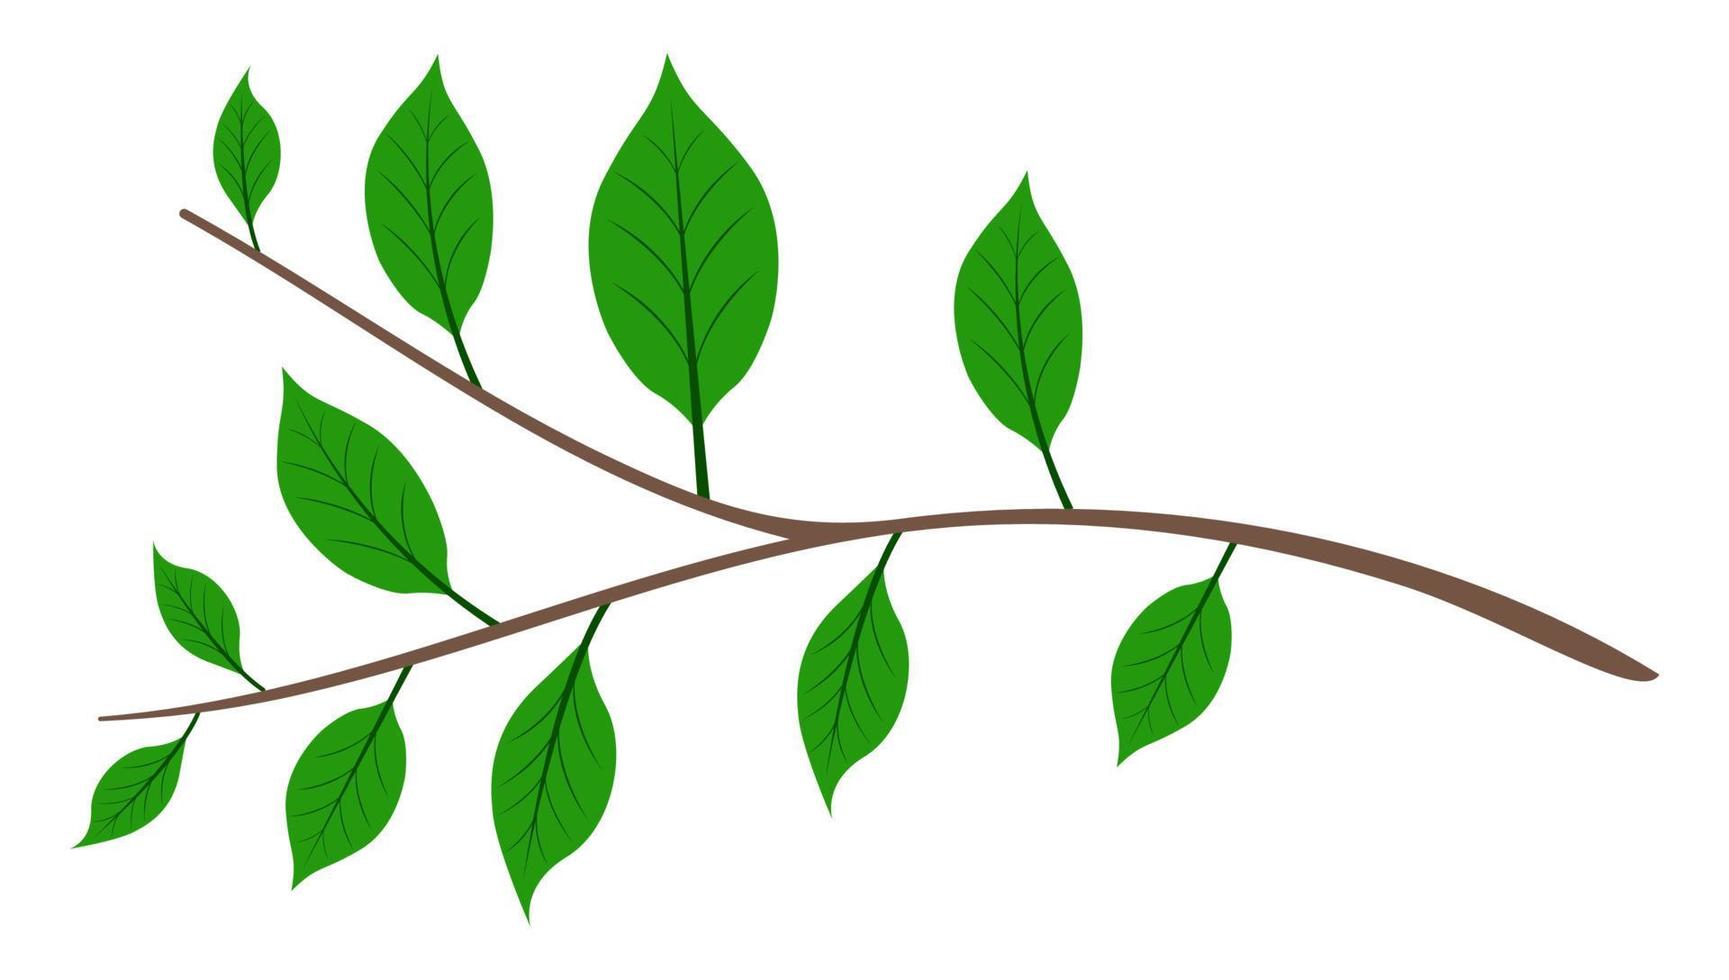 rama de árbol con hojas verdes dibujos animados aislado fondo blanco vector